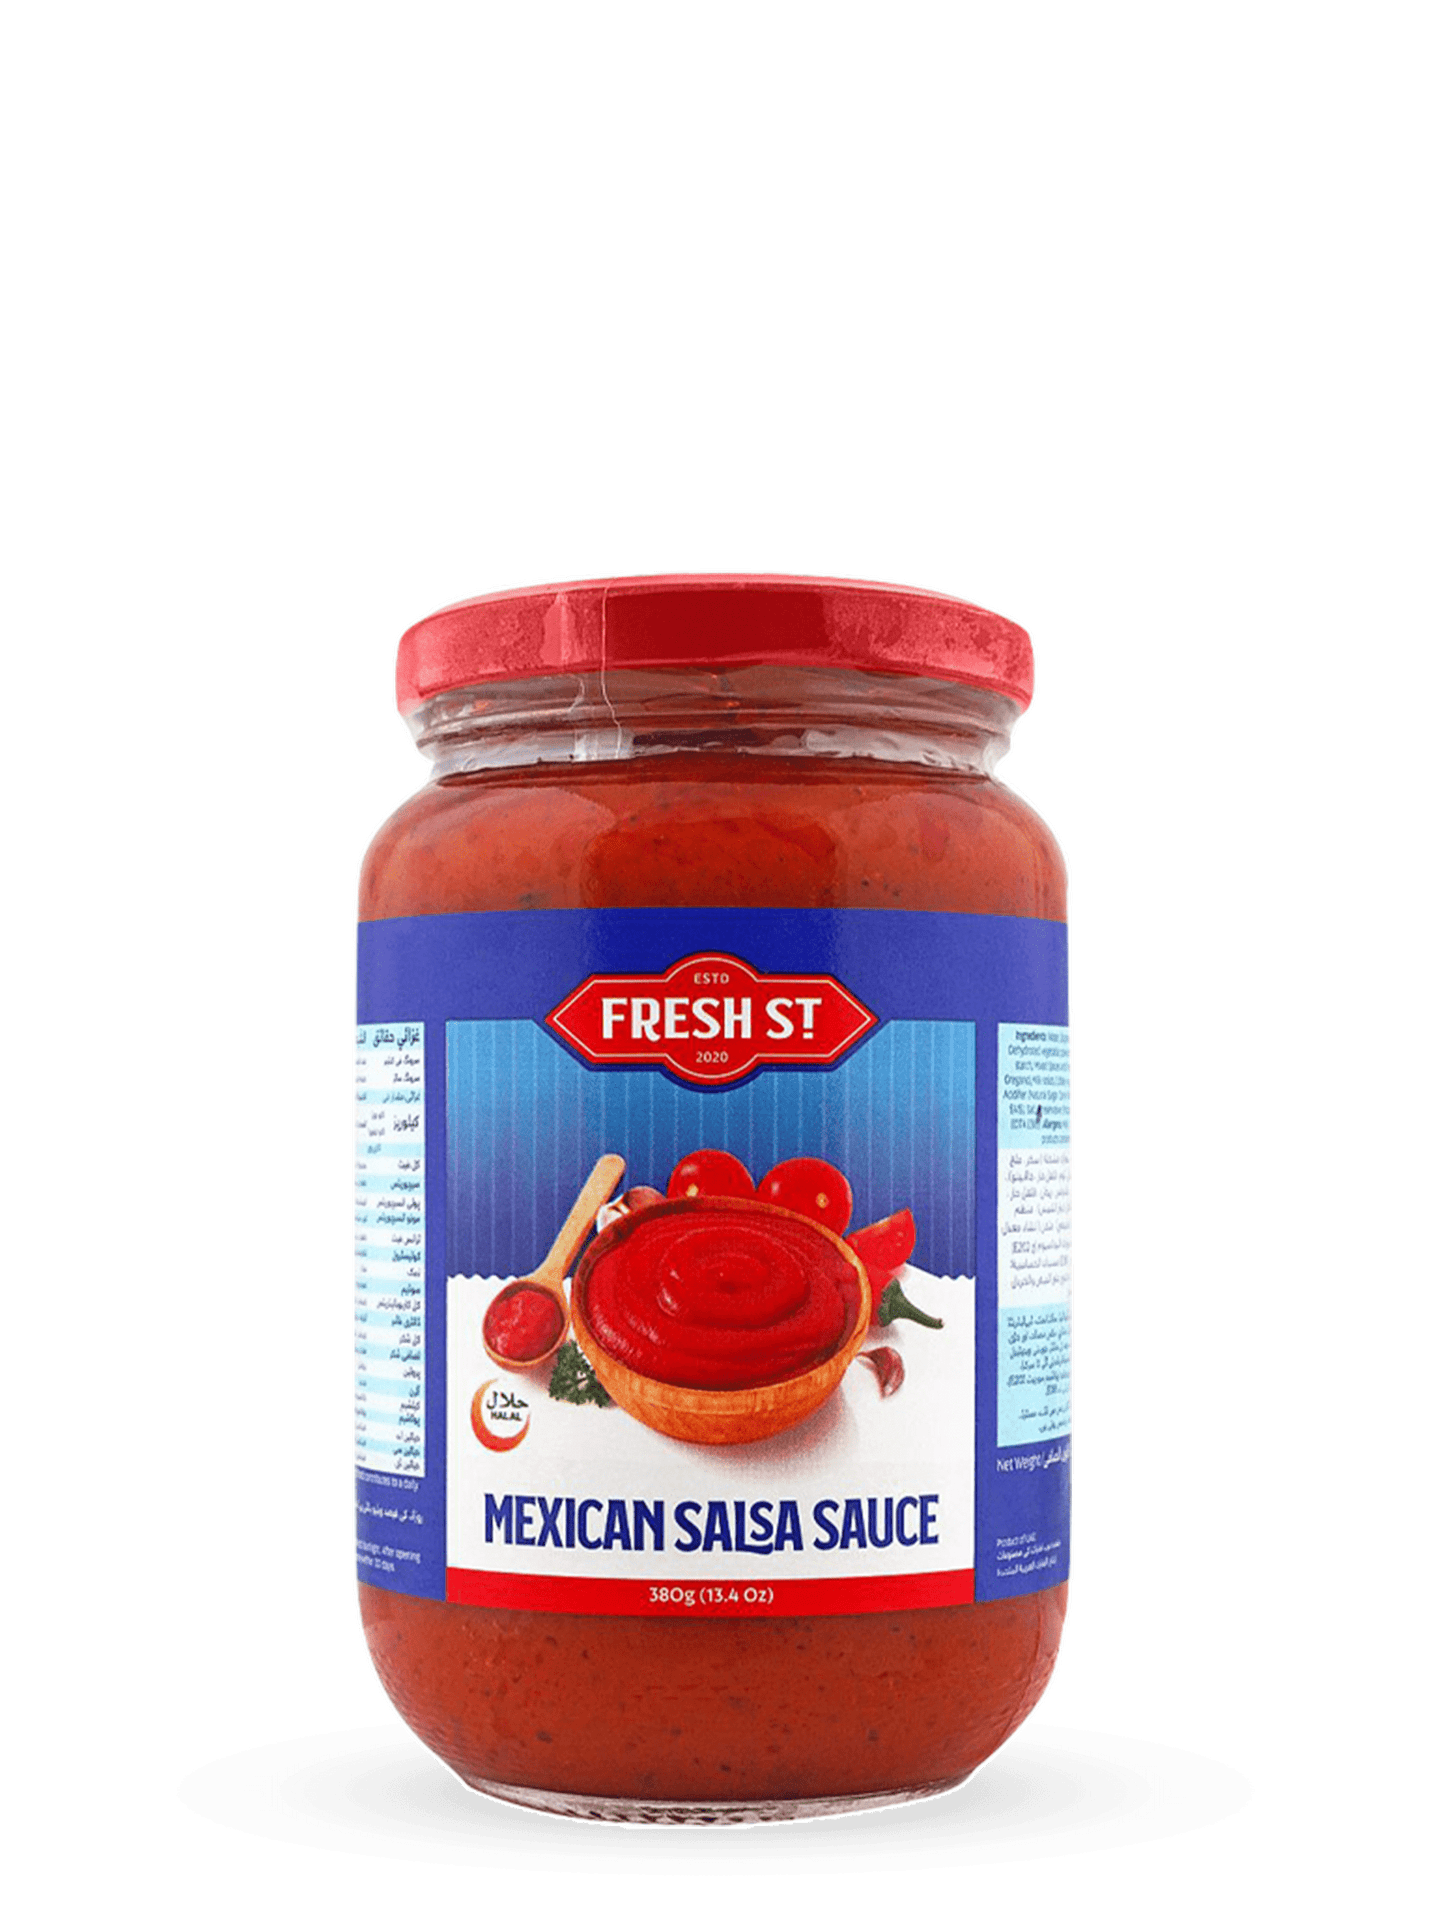 Mexican Salsa Sauce 380g